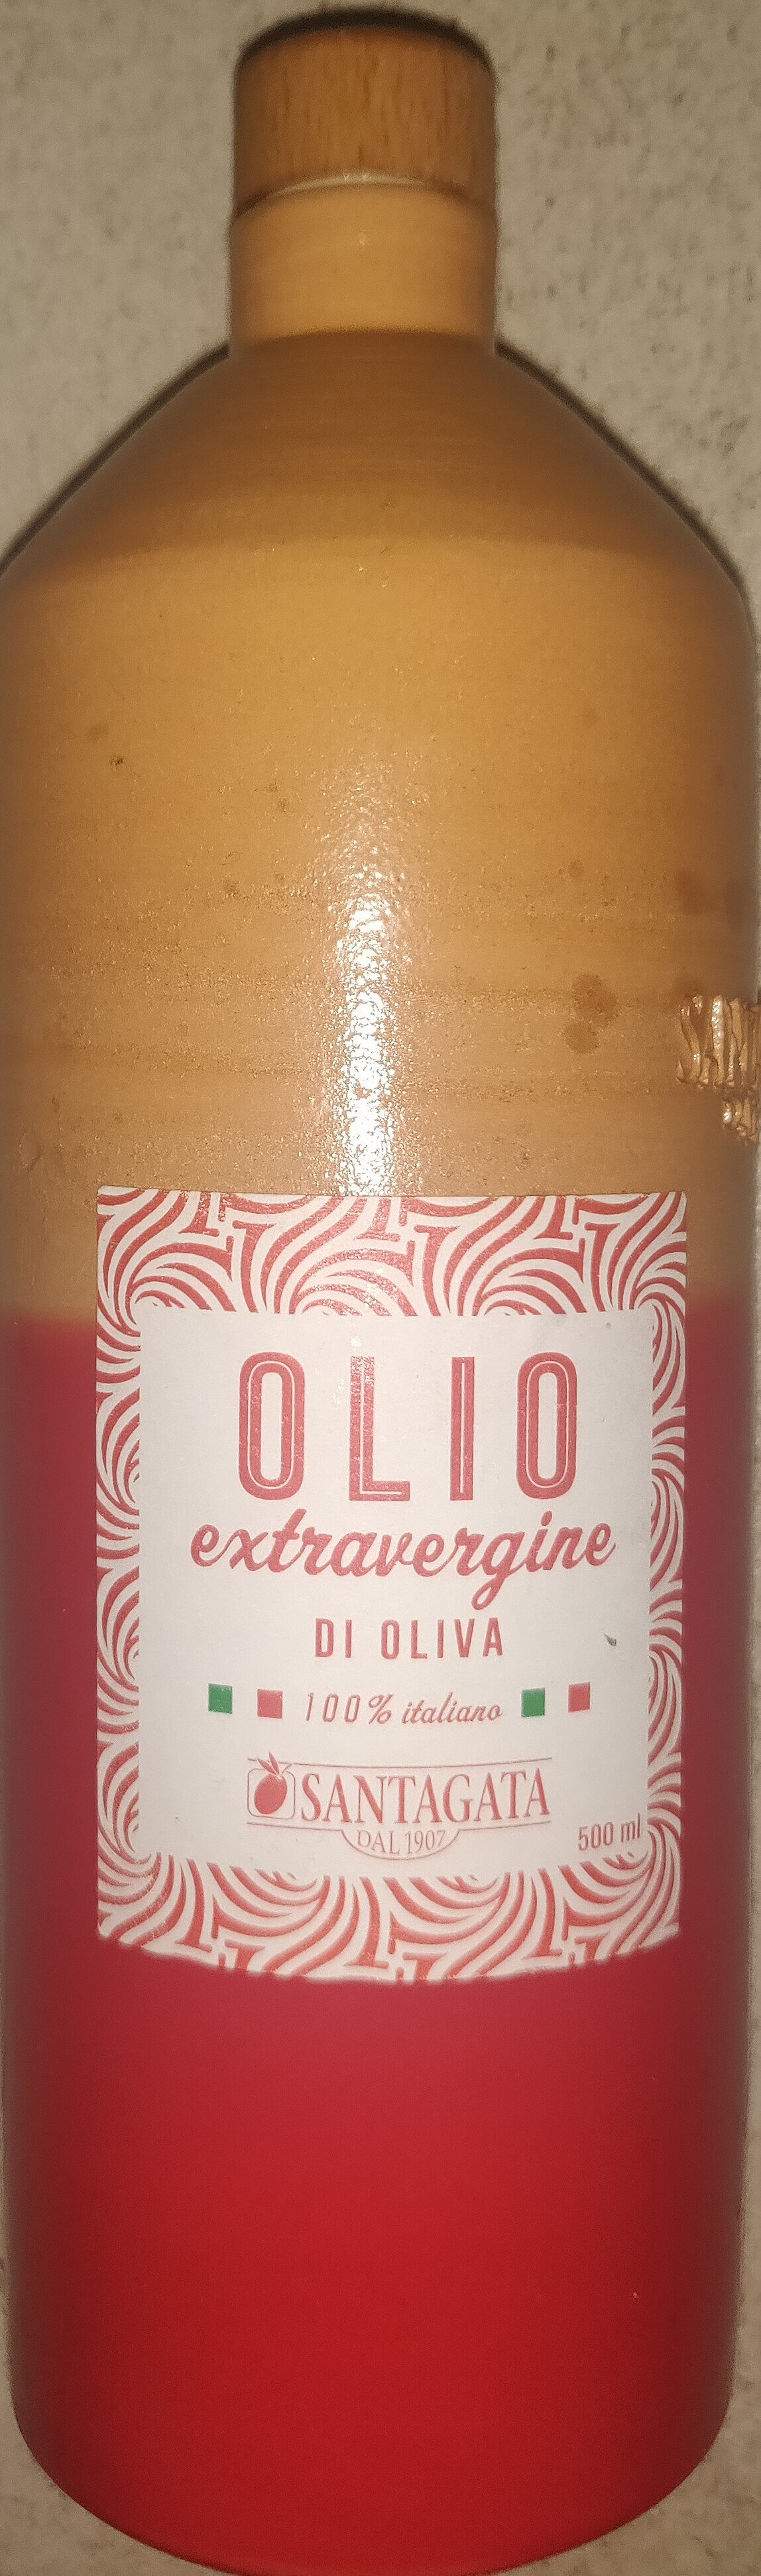 Olio extravergine di oliva - Produkt - it